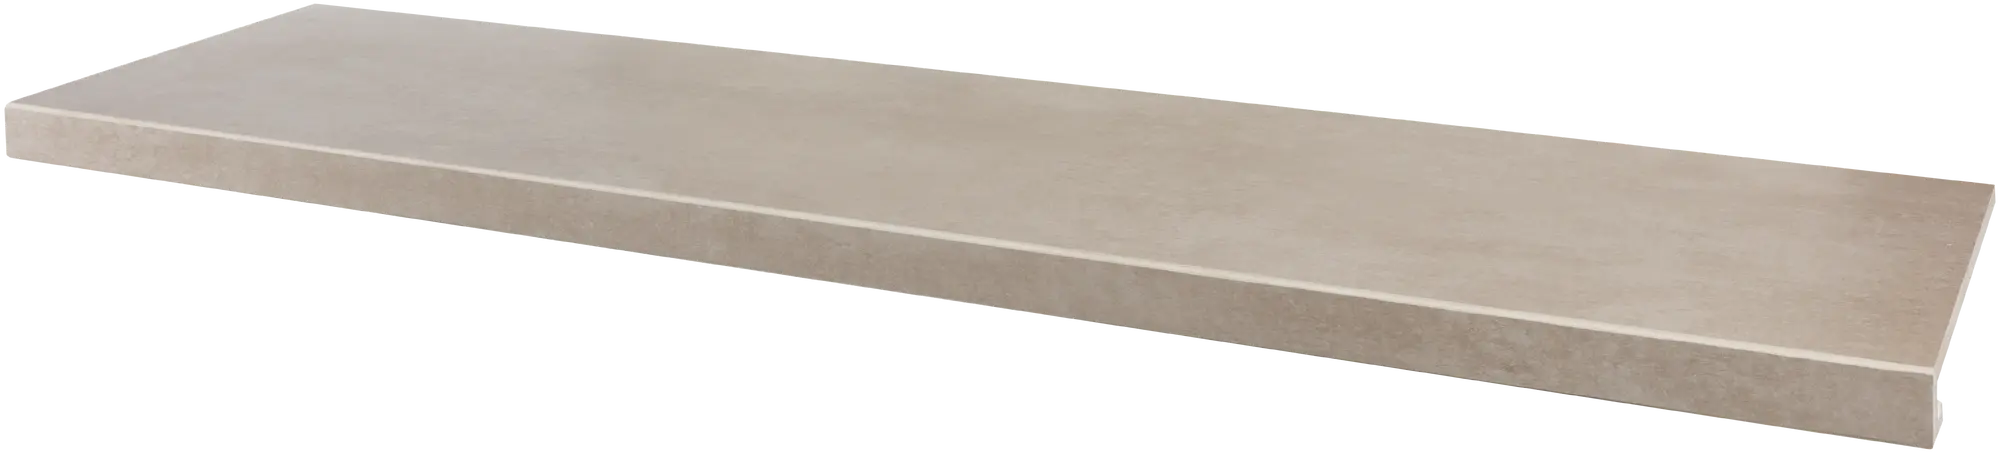 Peldaño de escalera porcelánico artens martins efecto cemento taupe 30x120 cm